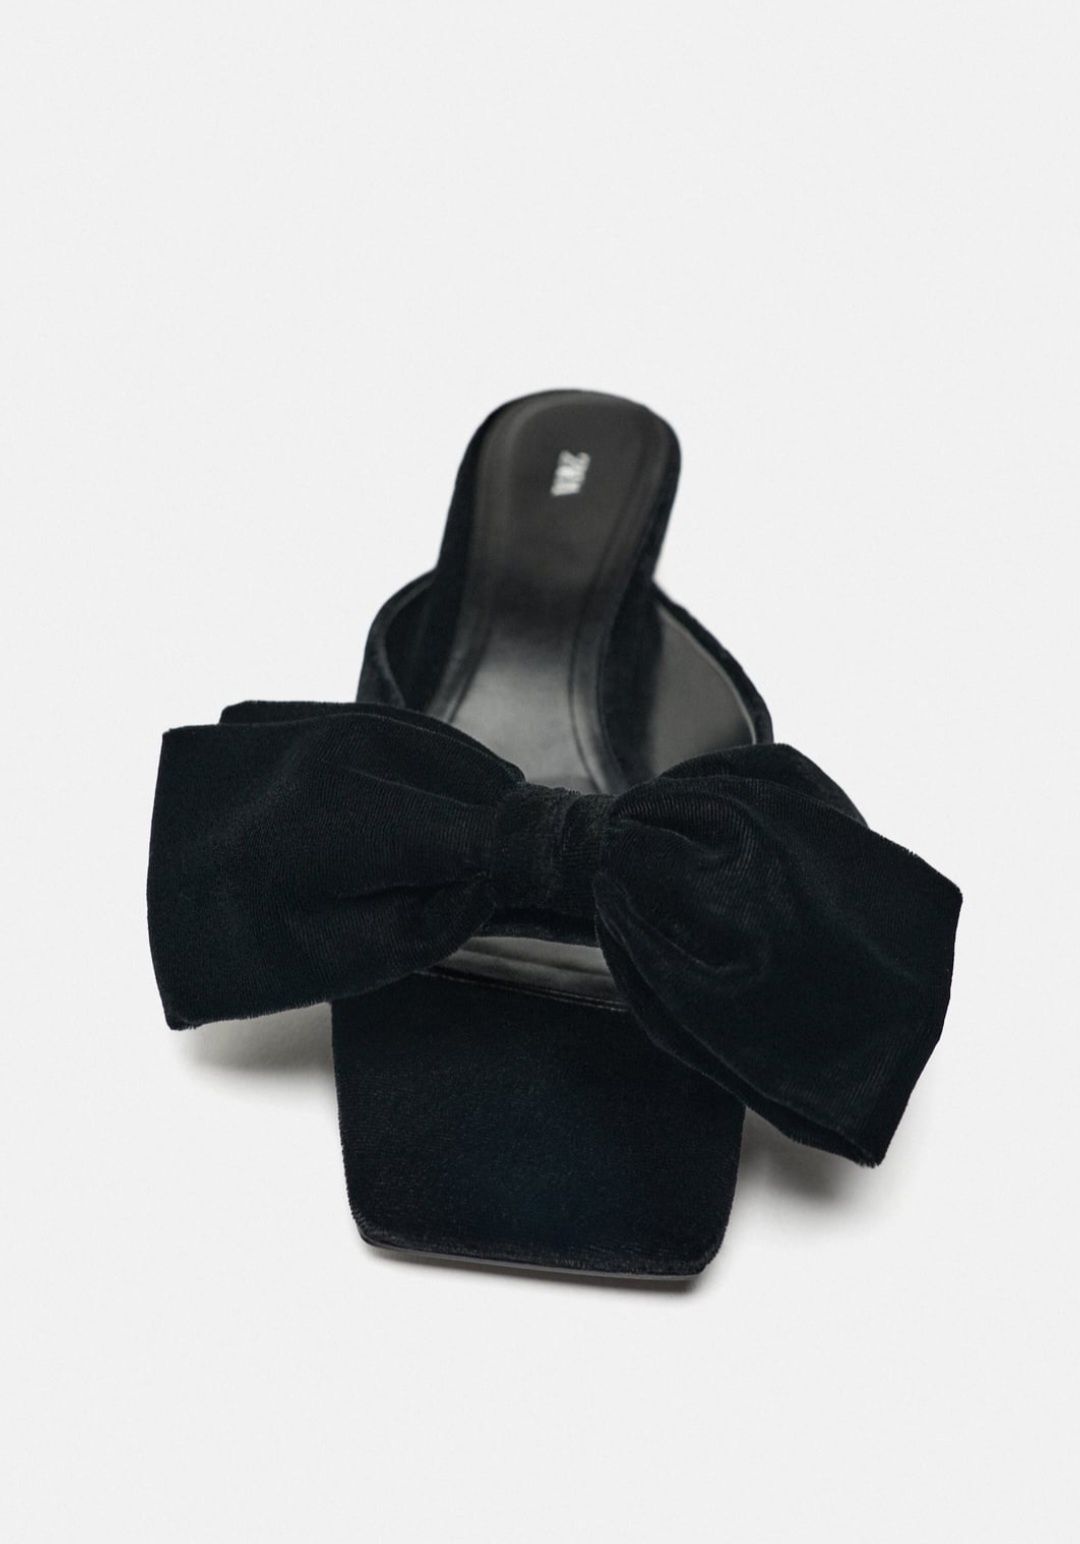 Шлепки Zara размер 37 чёрные